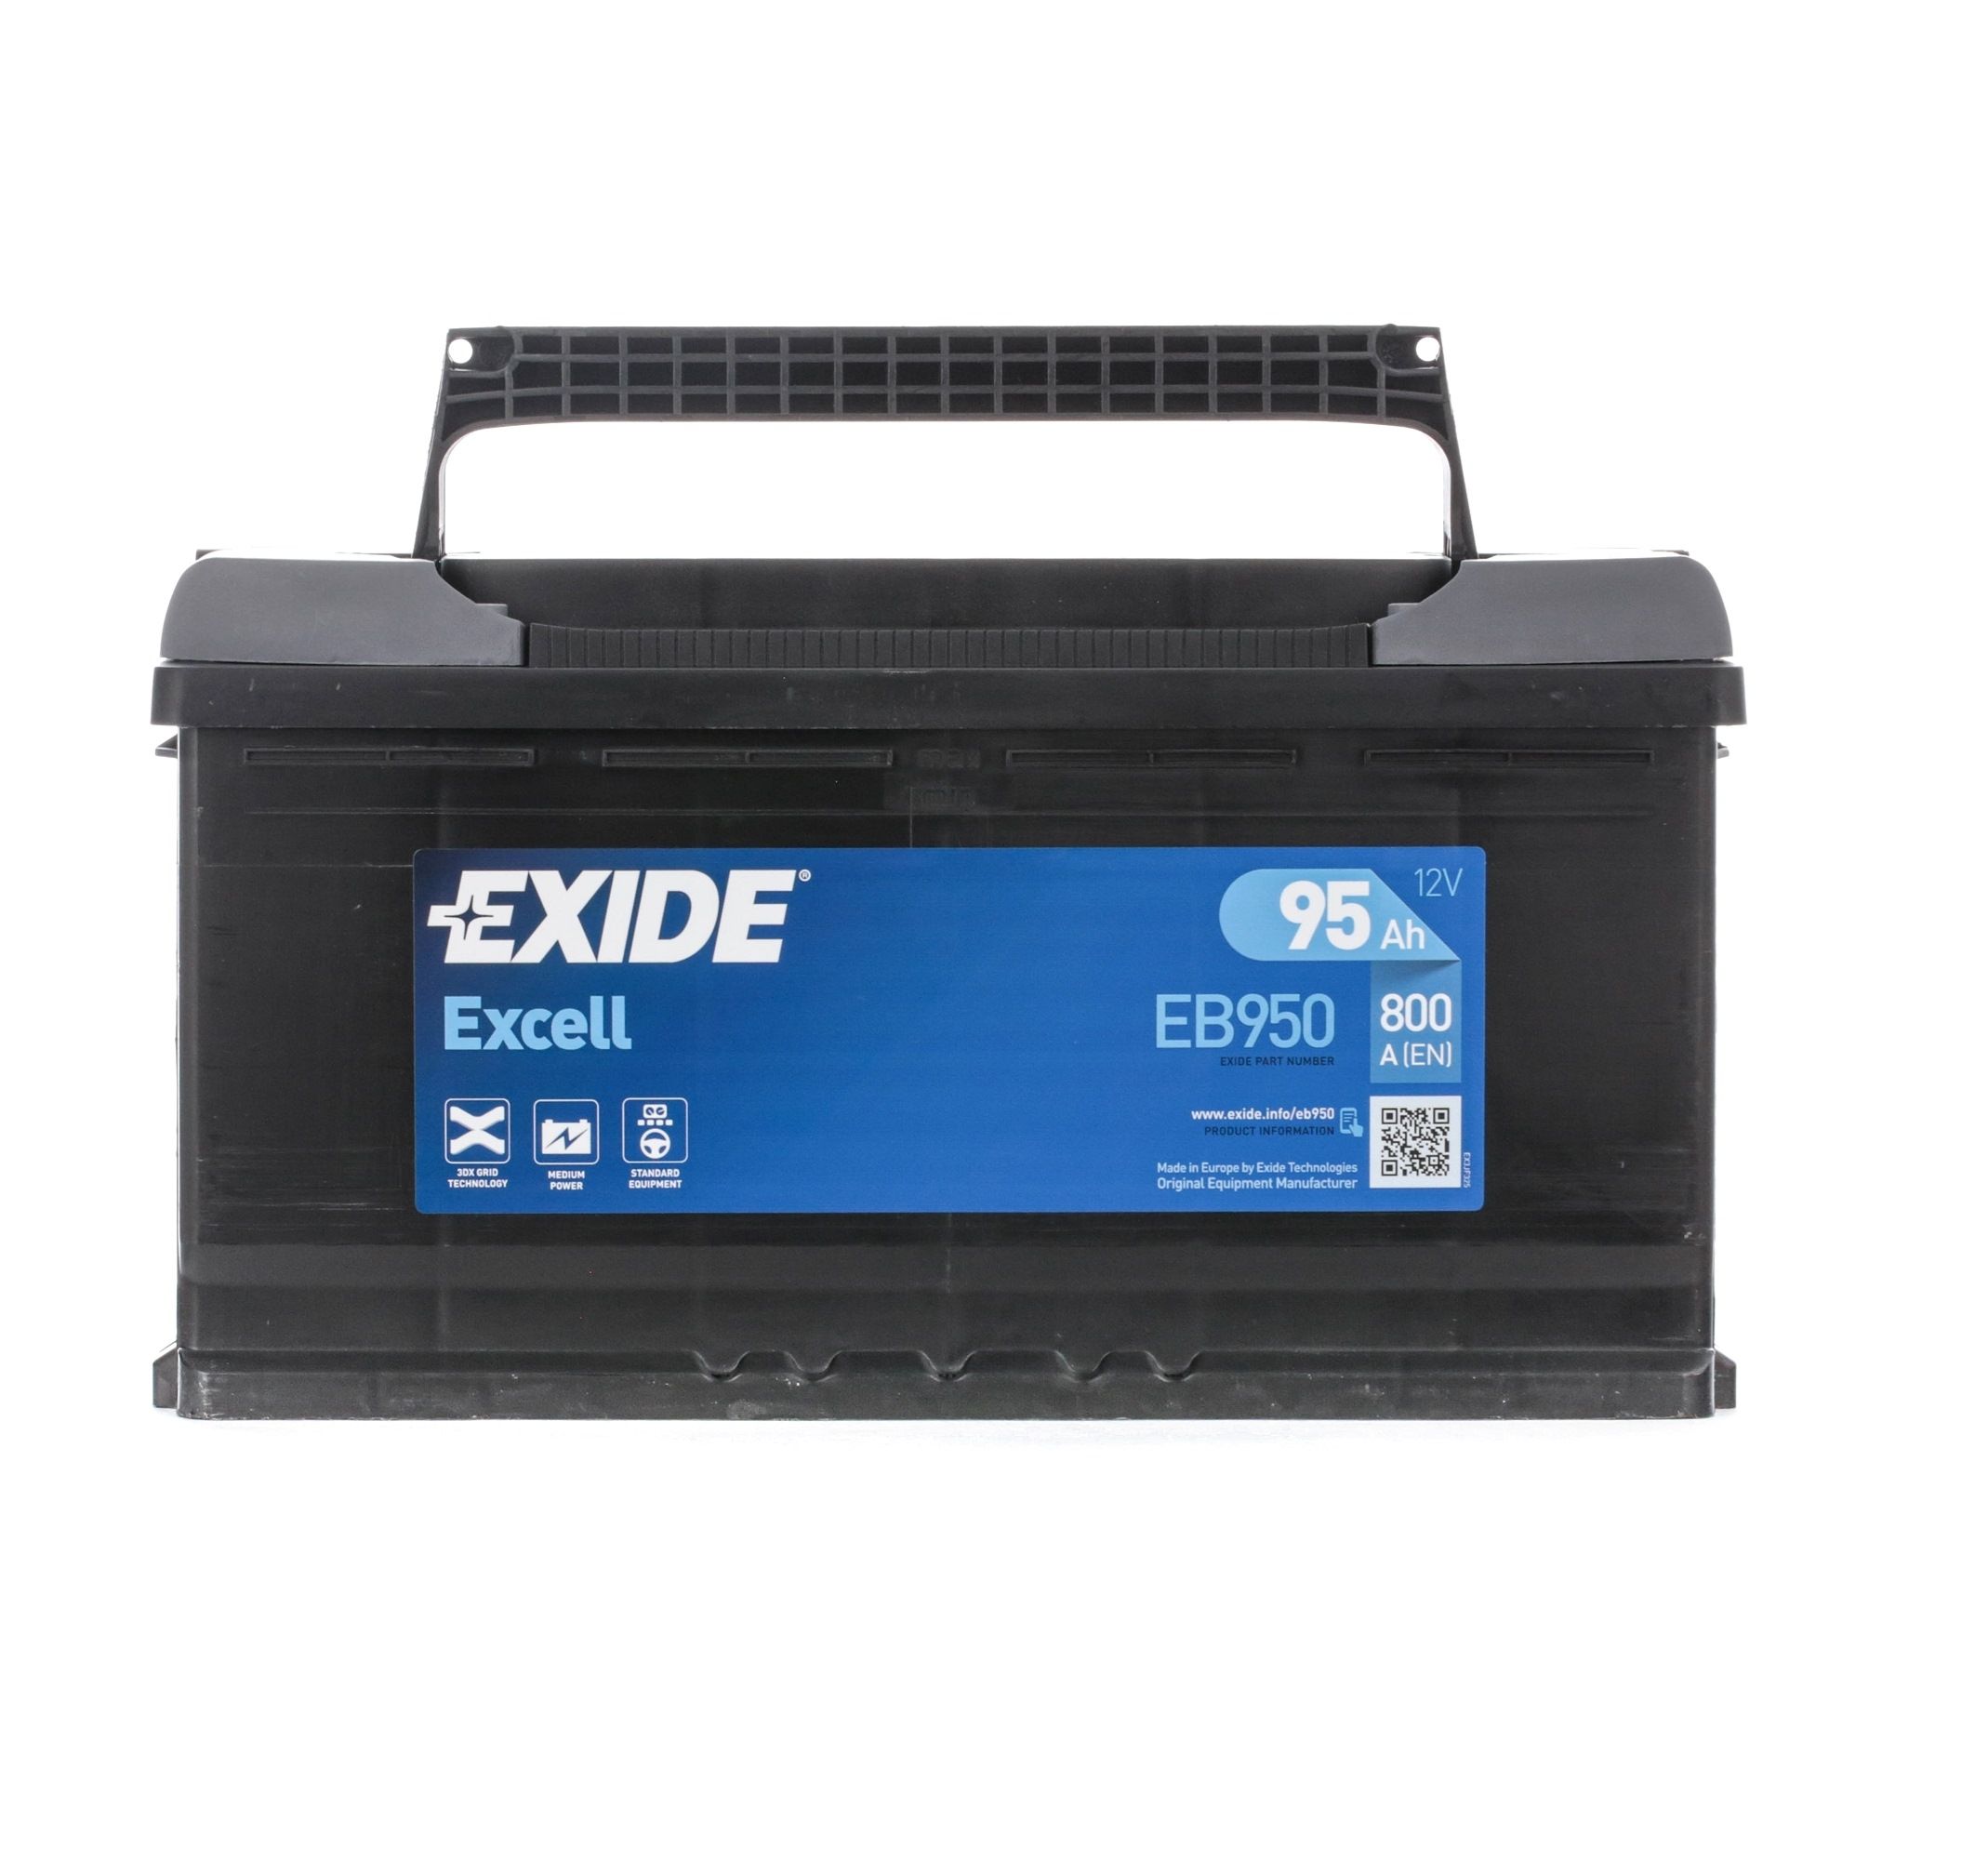 Nissan LEAF Starterbatterie EXIDE EB950 online kaufen